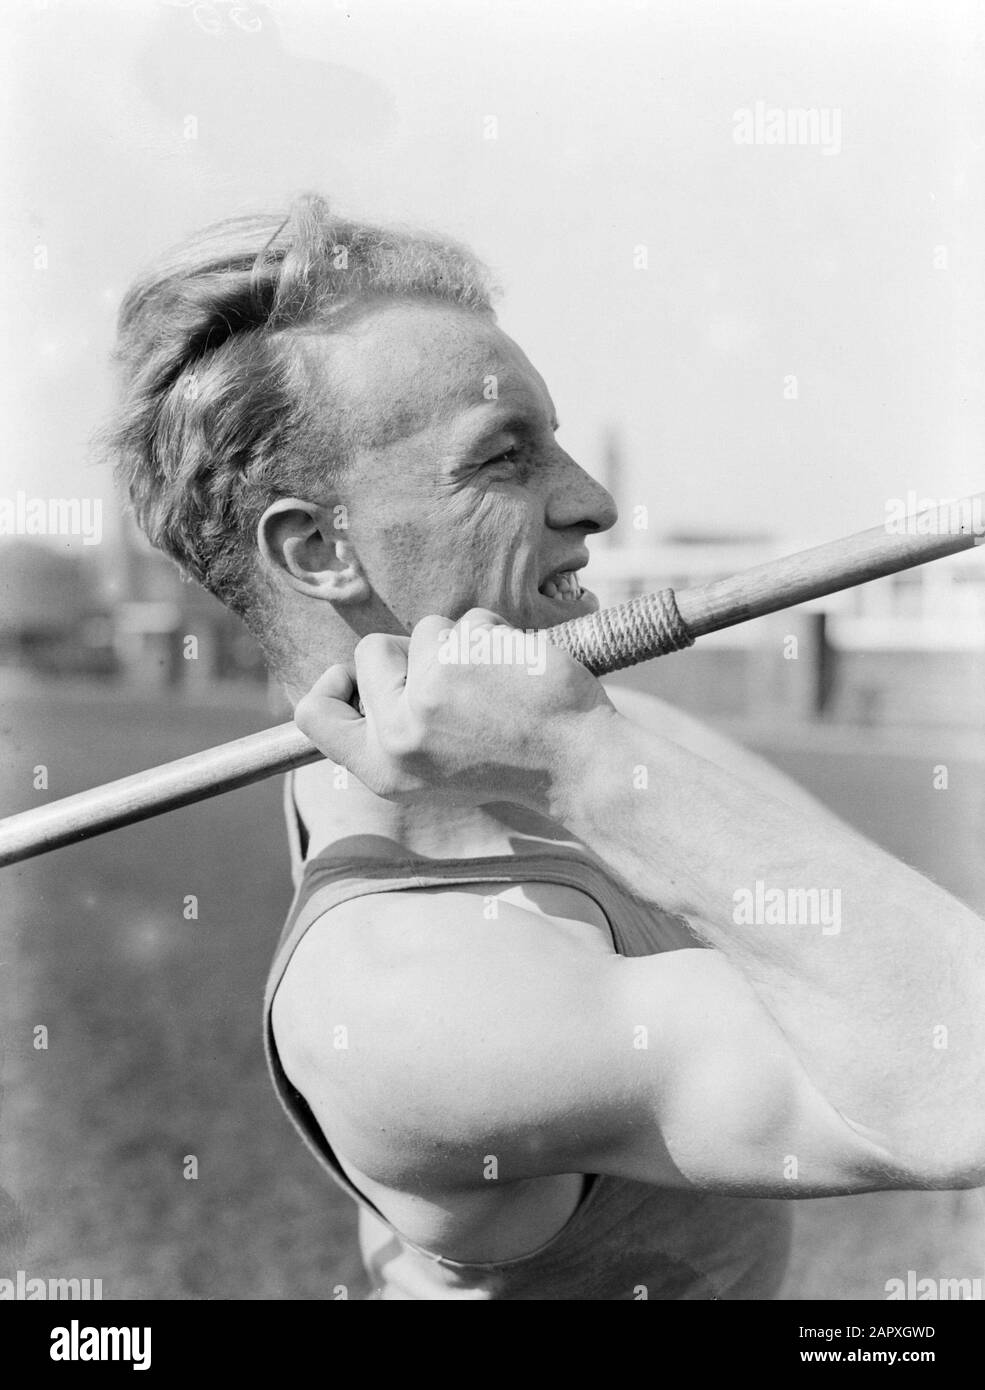 Reportage Sportler Speer Thrower Datum: 1933 Schlagwörter: Leichtathletik, Details, Männer, Speere Würfe Stockfoto